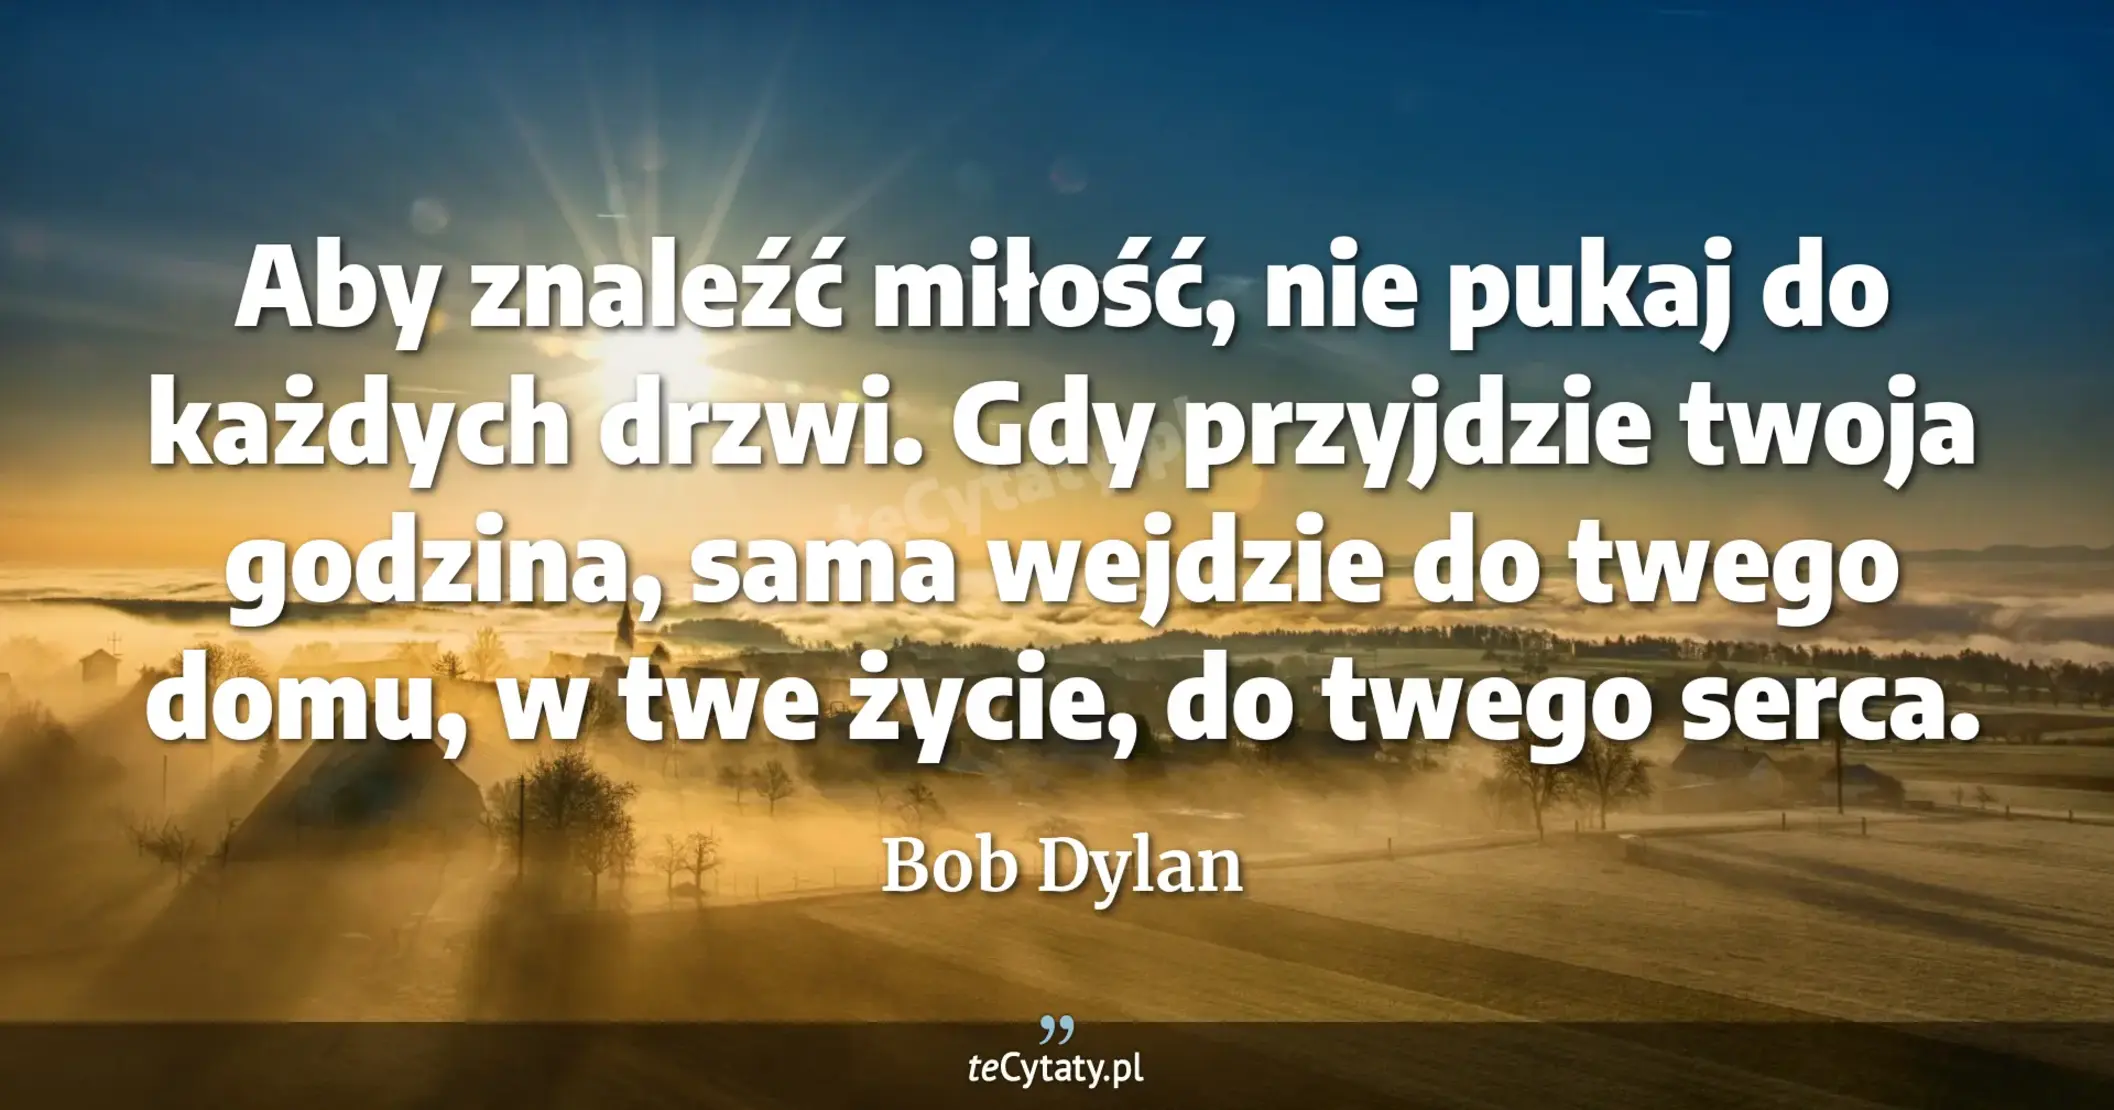 Aby znaleźć miłość, nie pukaj do każdych drzwi. Gdy przyjdzie twoja godzina, sama wejdzie do twego domu, w twe życie, do twego serca. - Bob Dylan